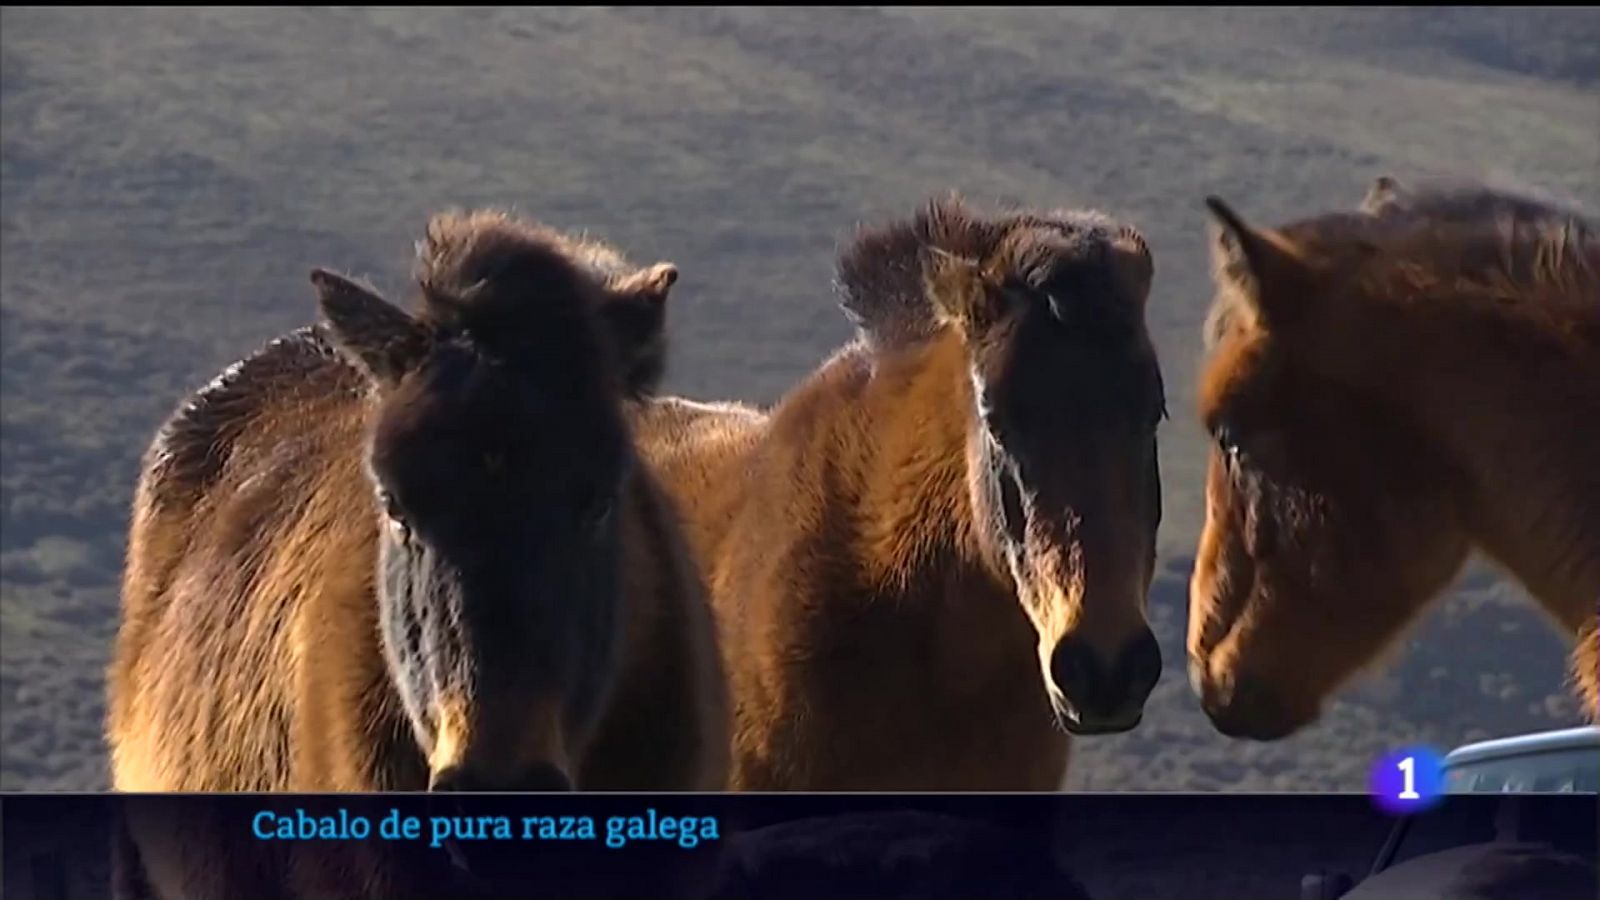 Cen criadores están recuperando o cabalo de pura raza galega 